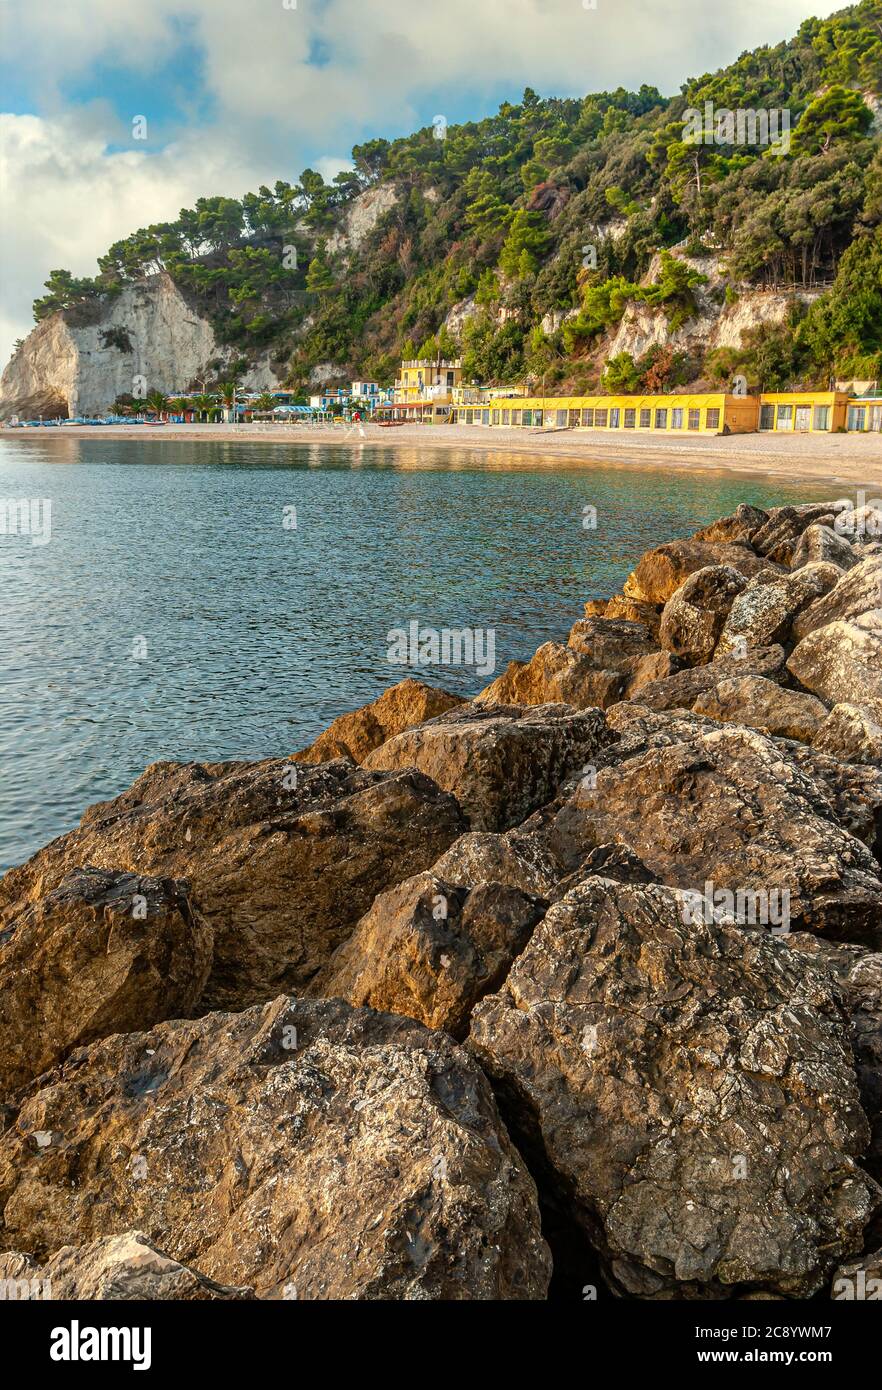 View over the Spiaggia Urbani Beach in Sirolo, Marche, Italy Stock Photo